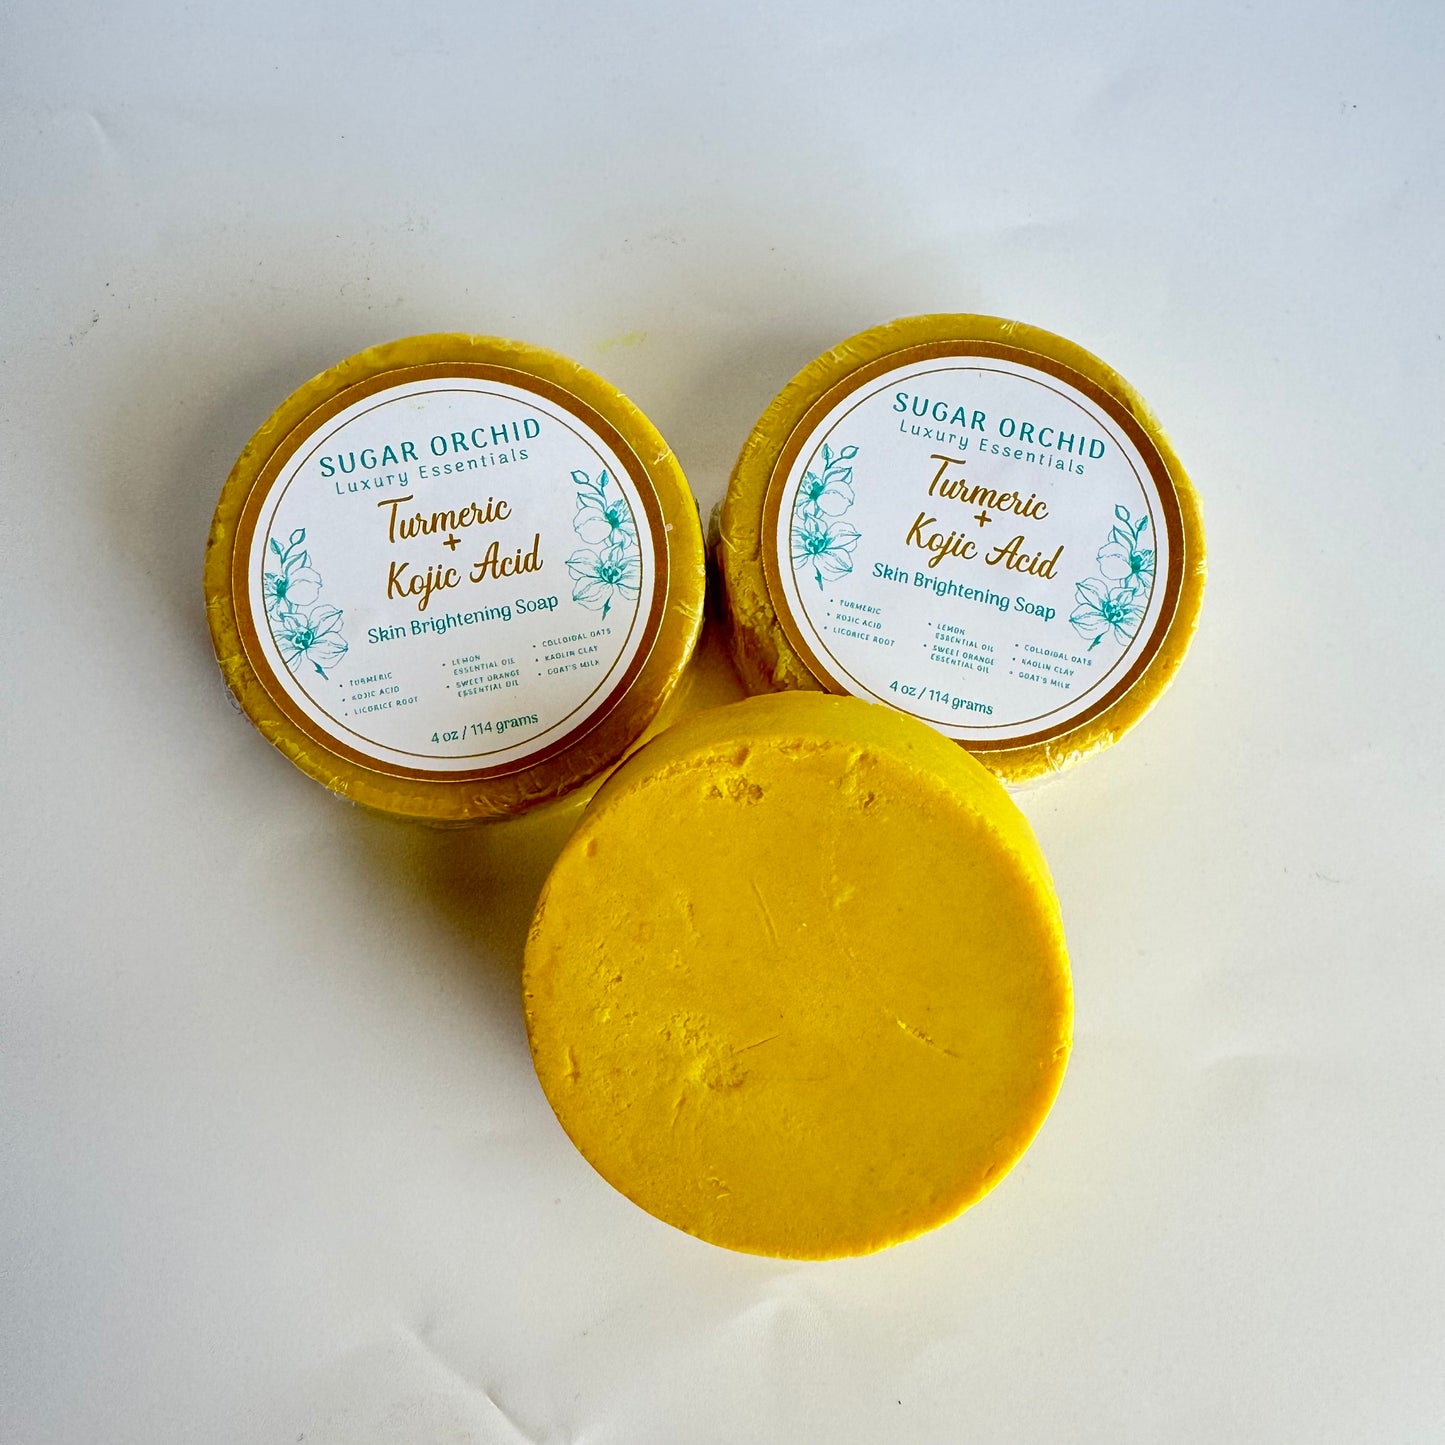 Golden Nectar Cream Face Soap